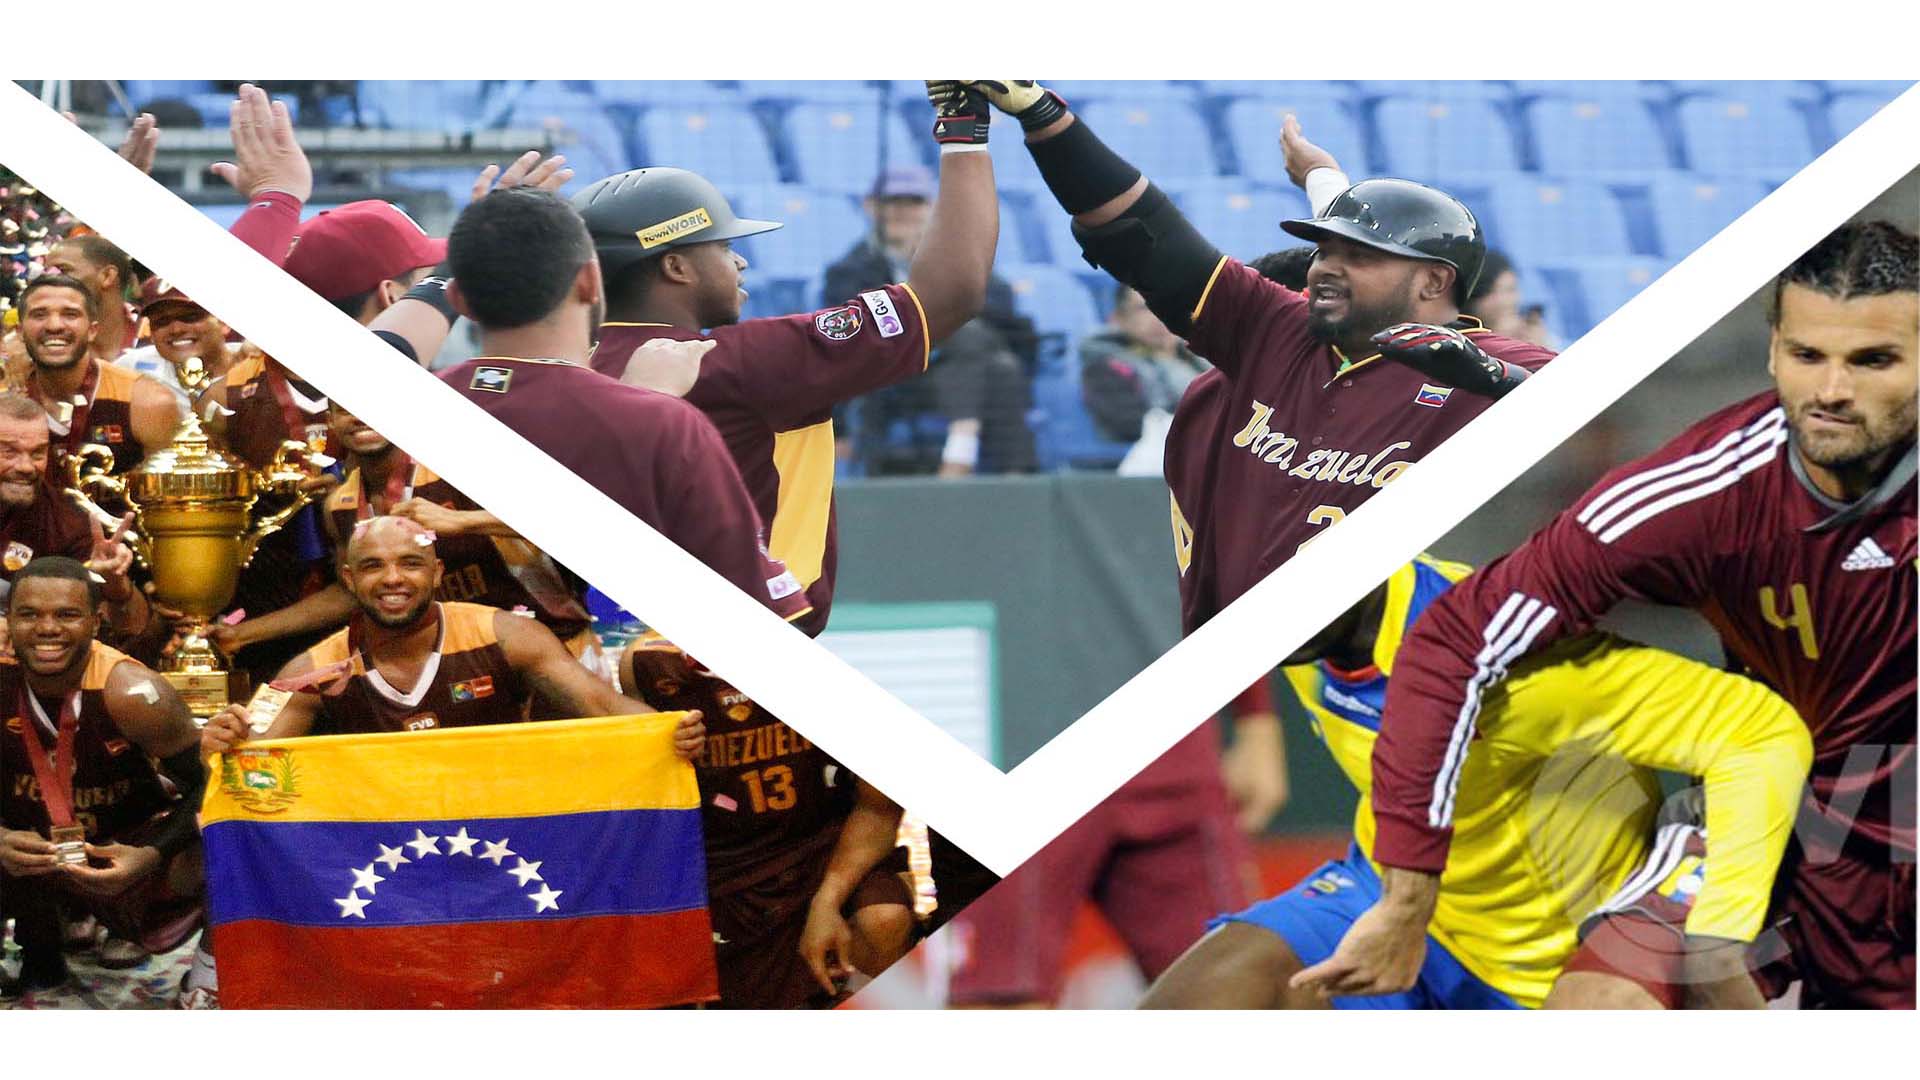 Un nuevo espacio llegará a los hogares venezolanos con los más profundos análisis del acontecer deportivo en las voces de los especialistas